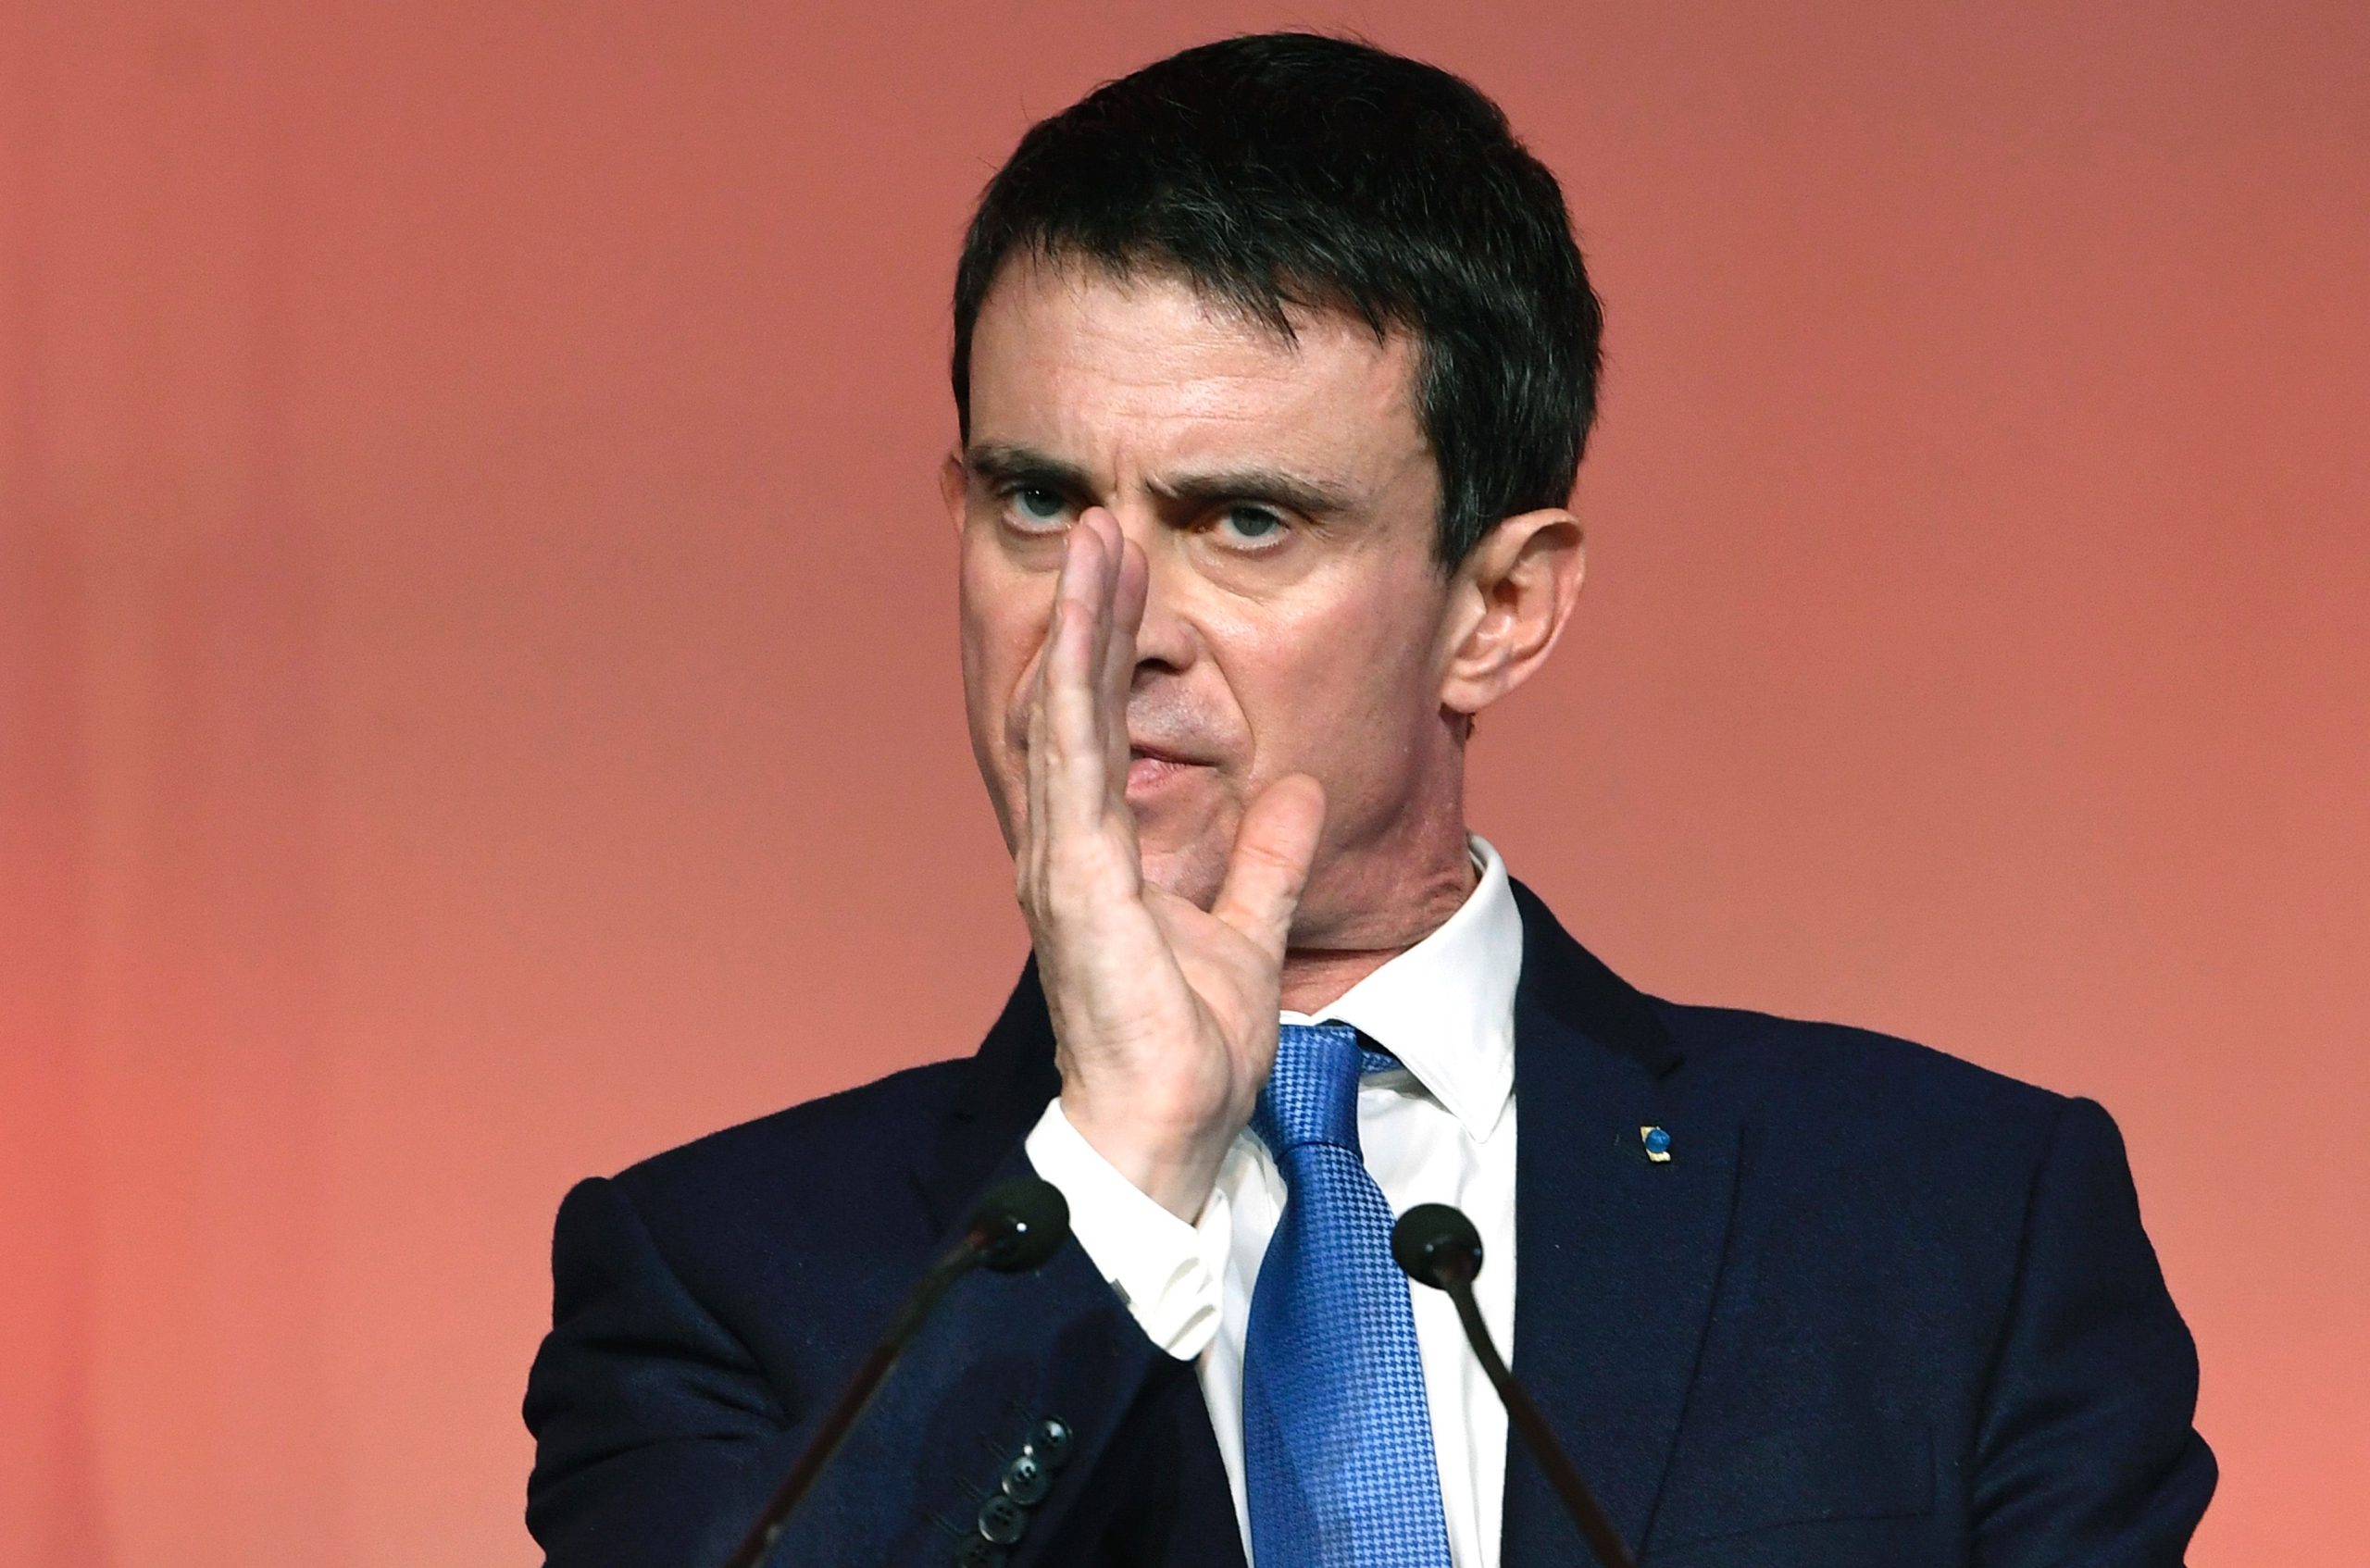 Candidato à Presidência de França levou bofetada em campanha [vídeo]